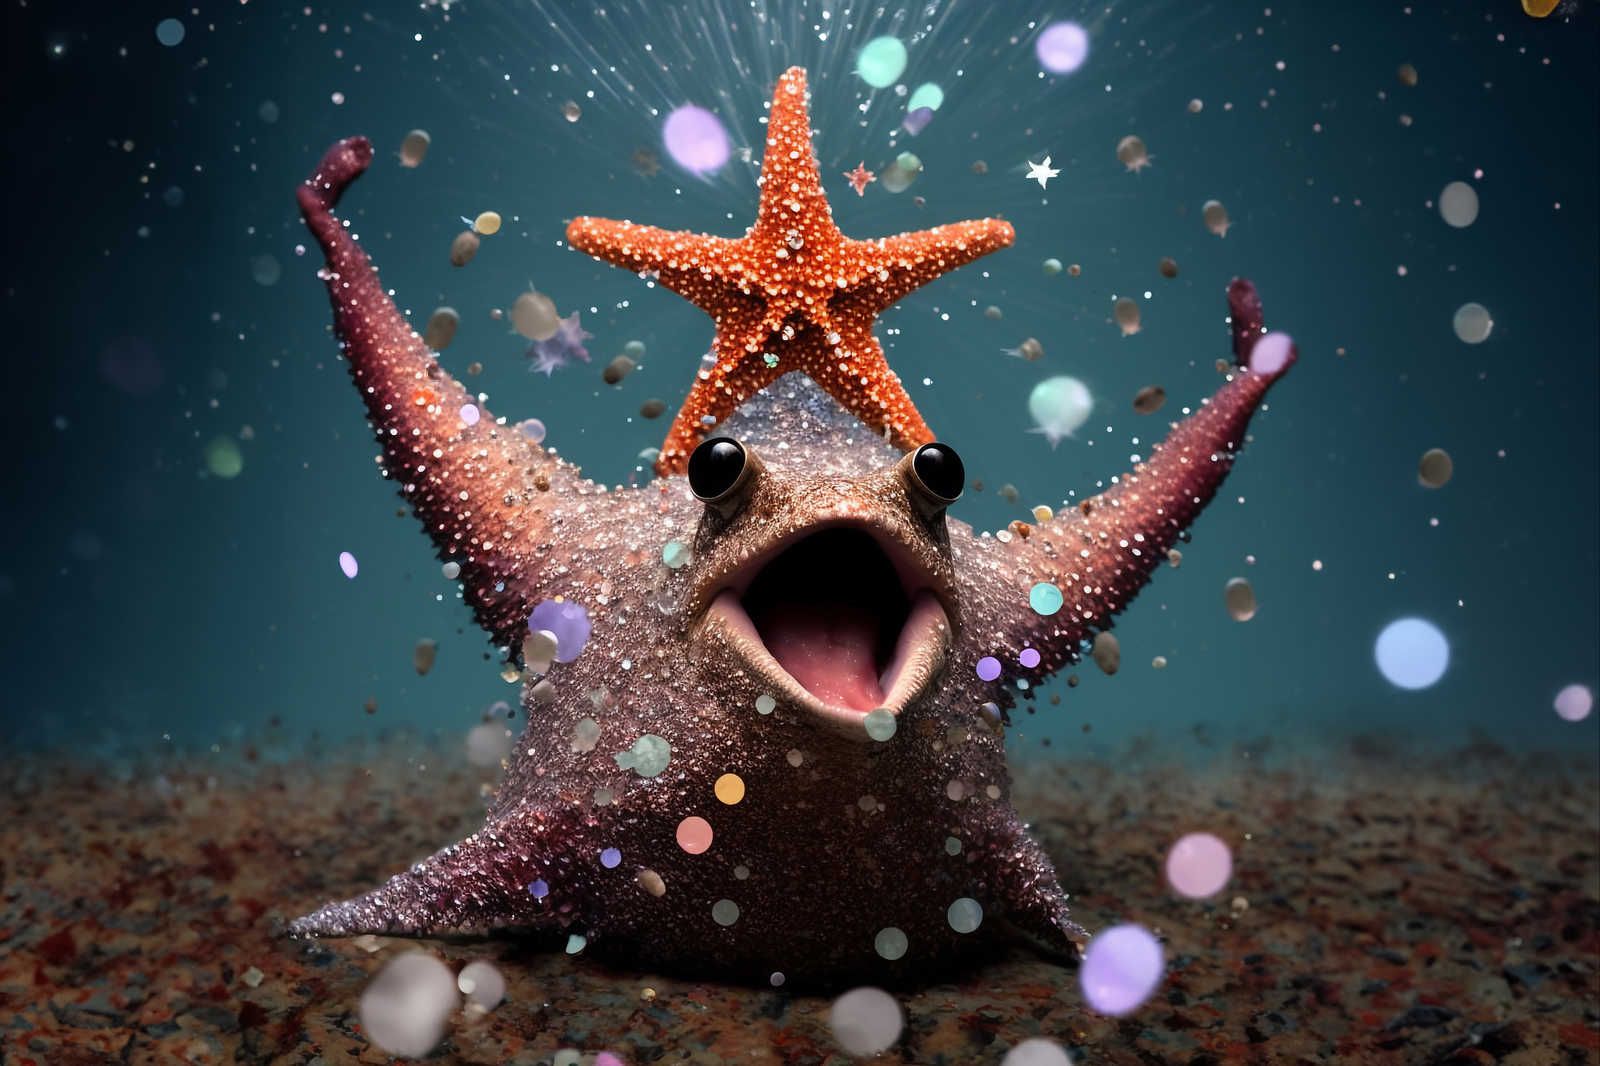             KI Lienzo »estrella de mar«< - 120 cm x 80 cm
        